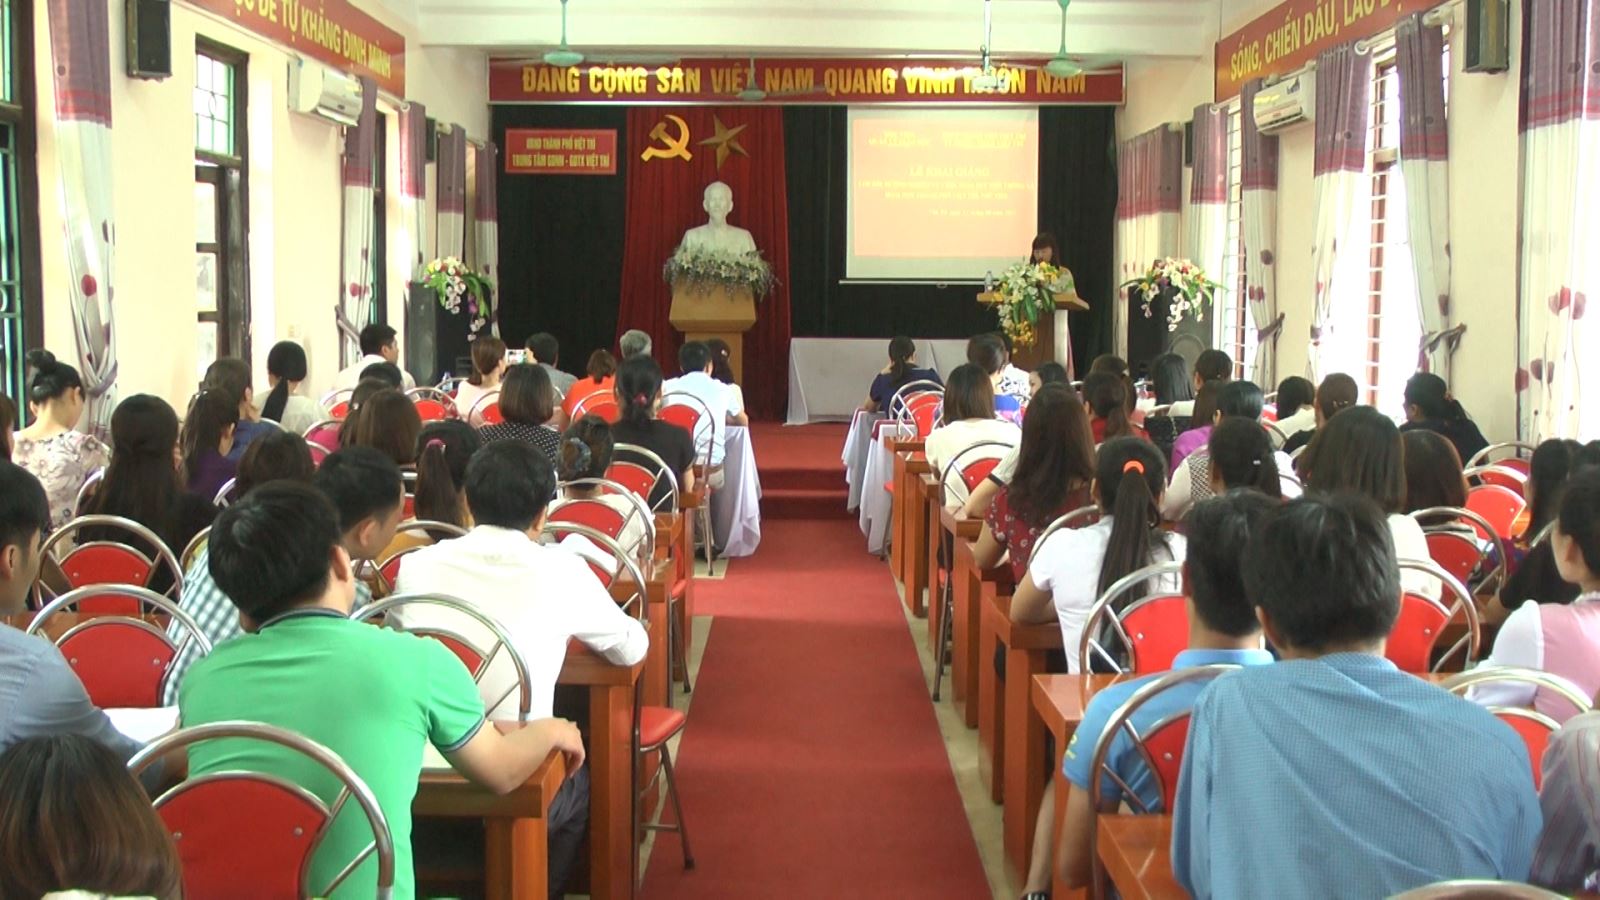 Ngành quản lý giáo dục đóng vai trò quan trọng trong hệ thống giáo dục tại Việt Nam